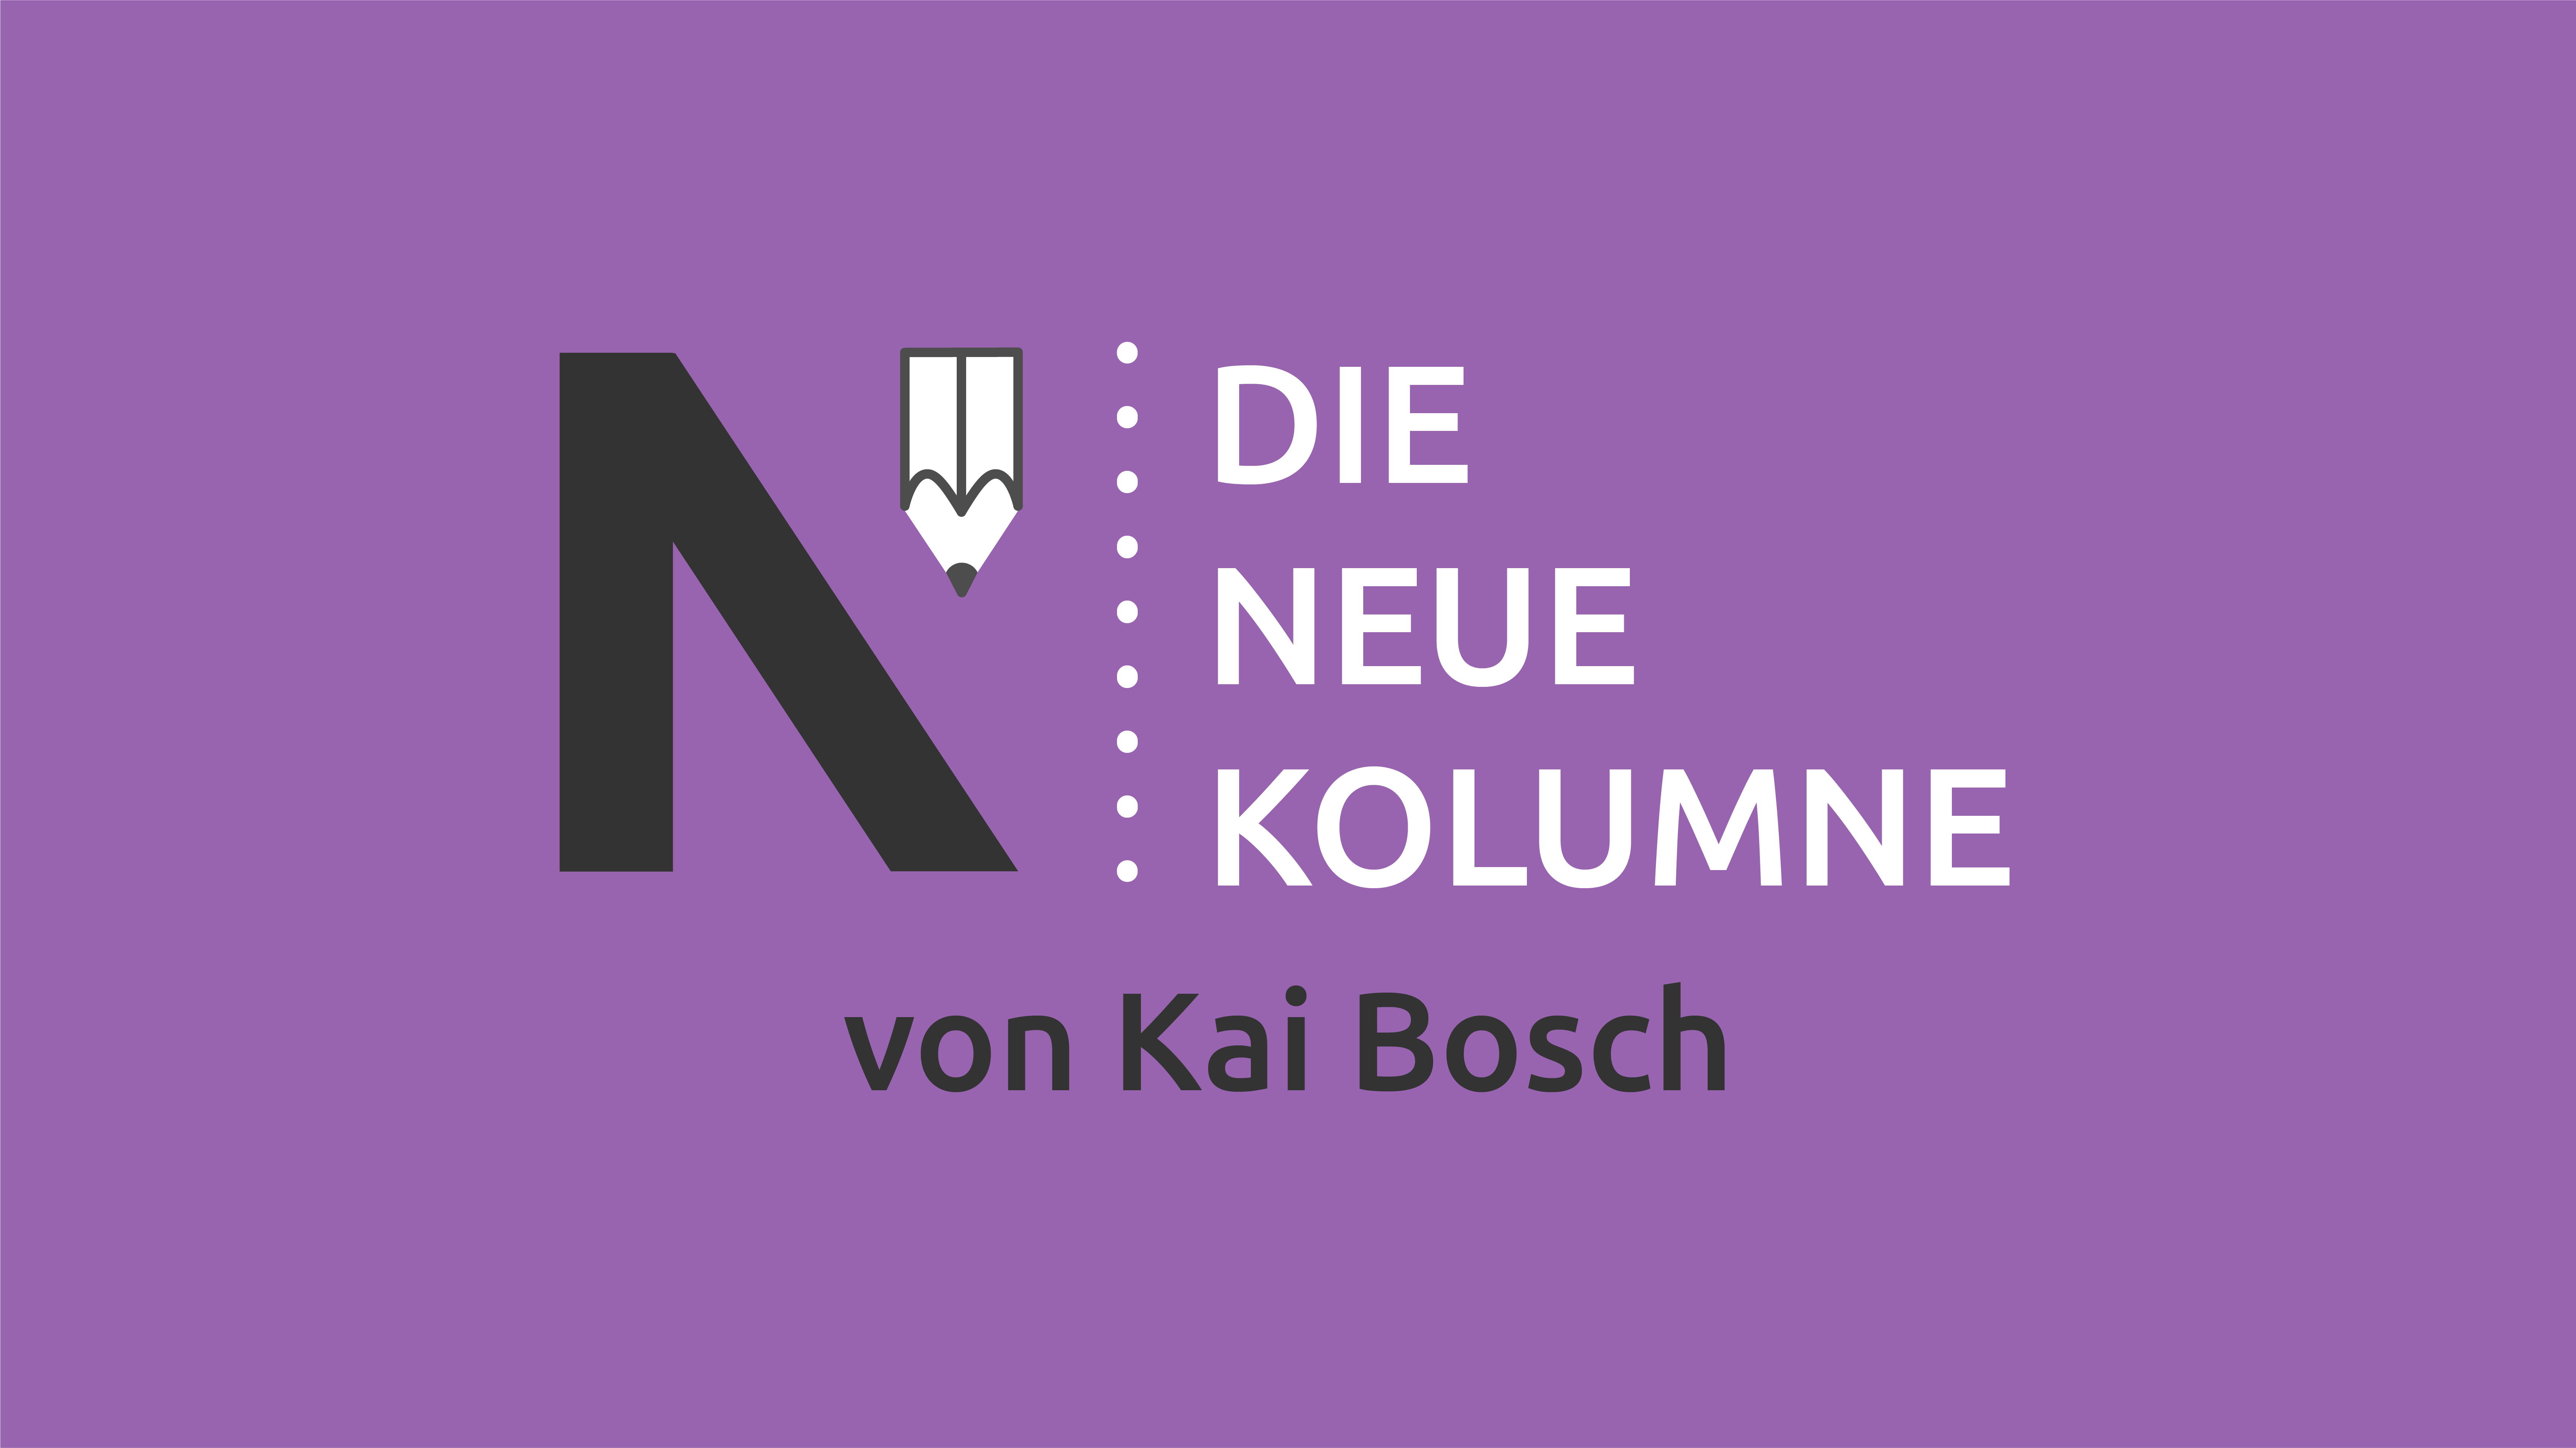 Das Logo von die neue Norm auf lila Grund. Rechts davon steht: Die Neue Kolumne. Unten steht: Von Kai Bosch.